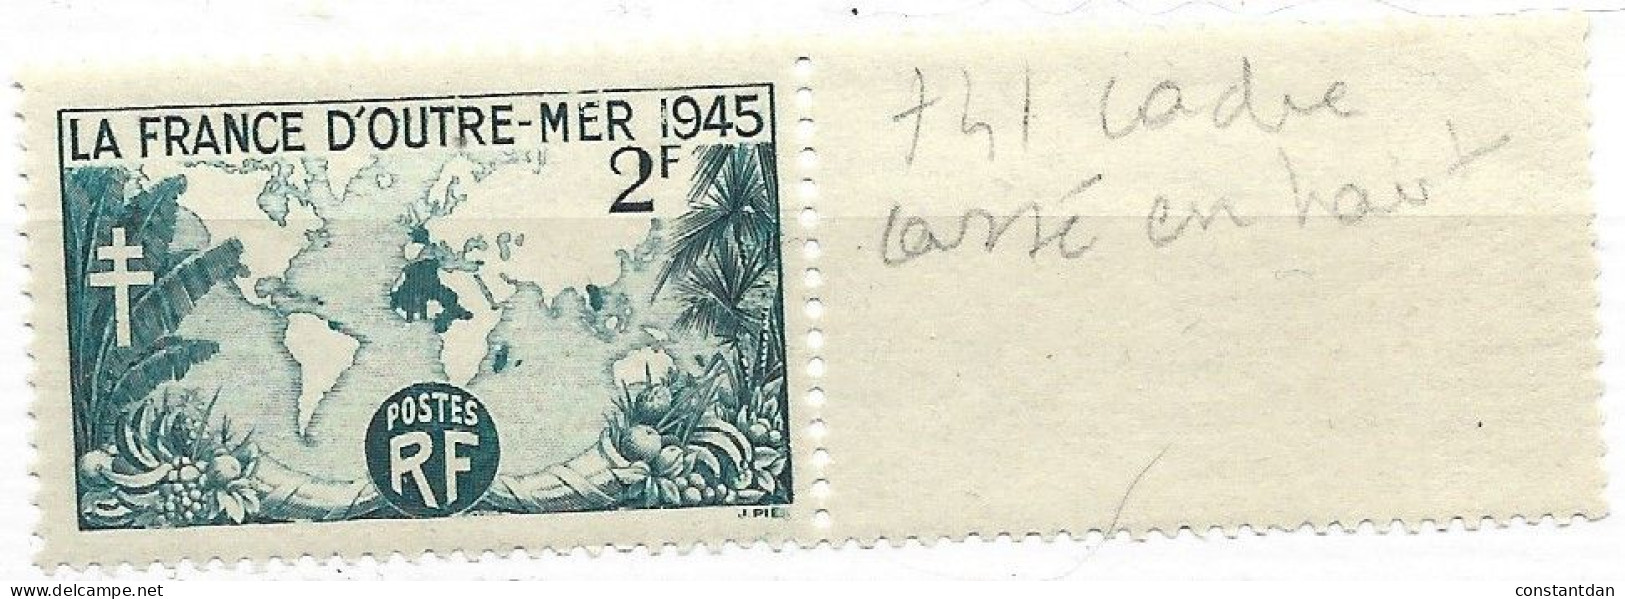 FRANCE N° 741 2F BLEU ET BLANC LA FRANCE D'OUTRE MER CADRE CASSE EN HAUT NEUF SANS CHARNIERE - Unused Stamps